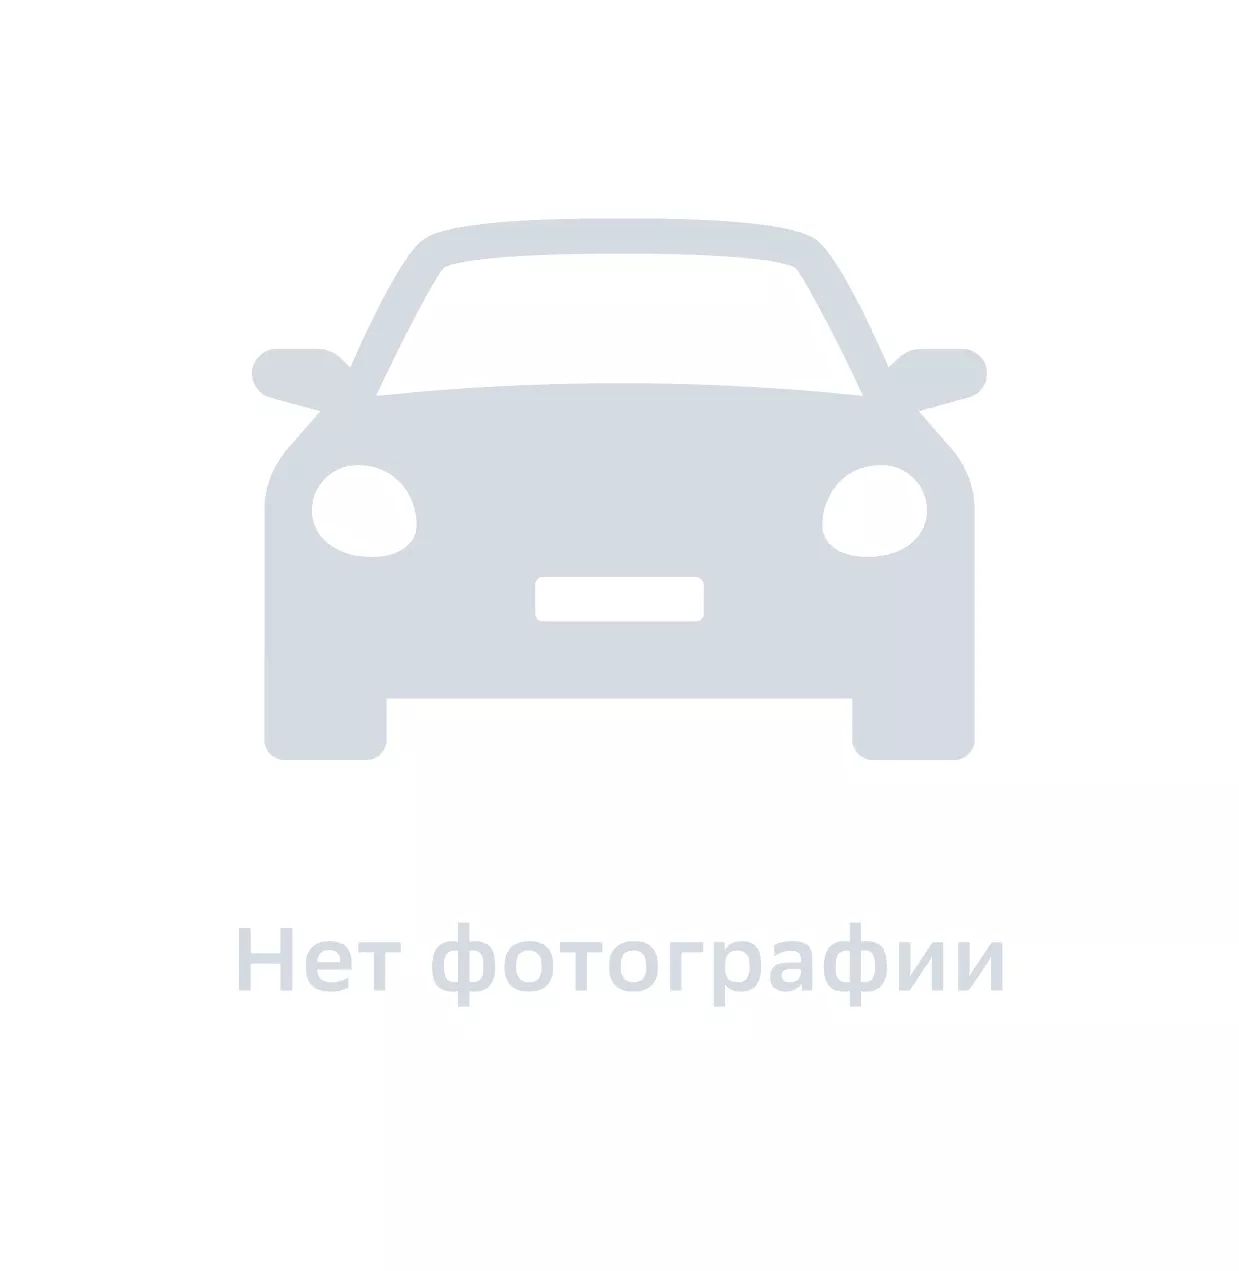 Болт автомобильный, GM DAT, арт. 94501020, цена за 1 шт.